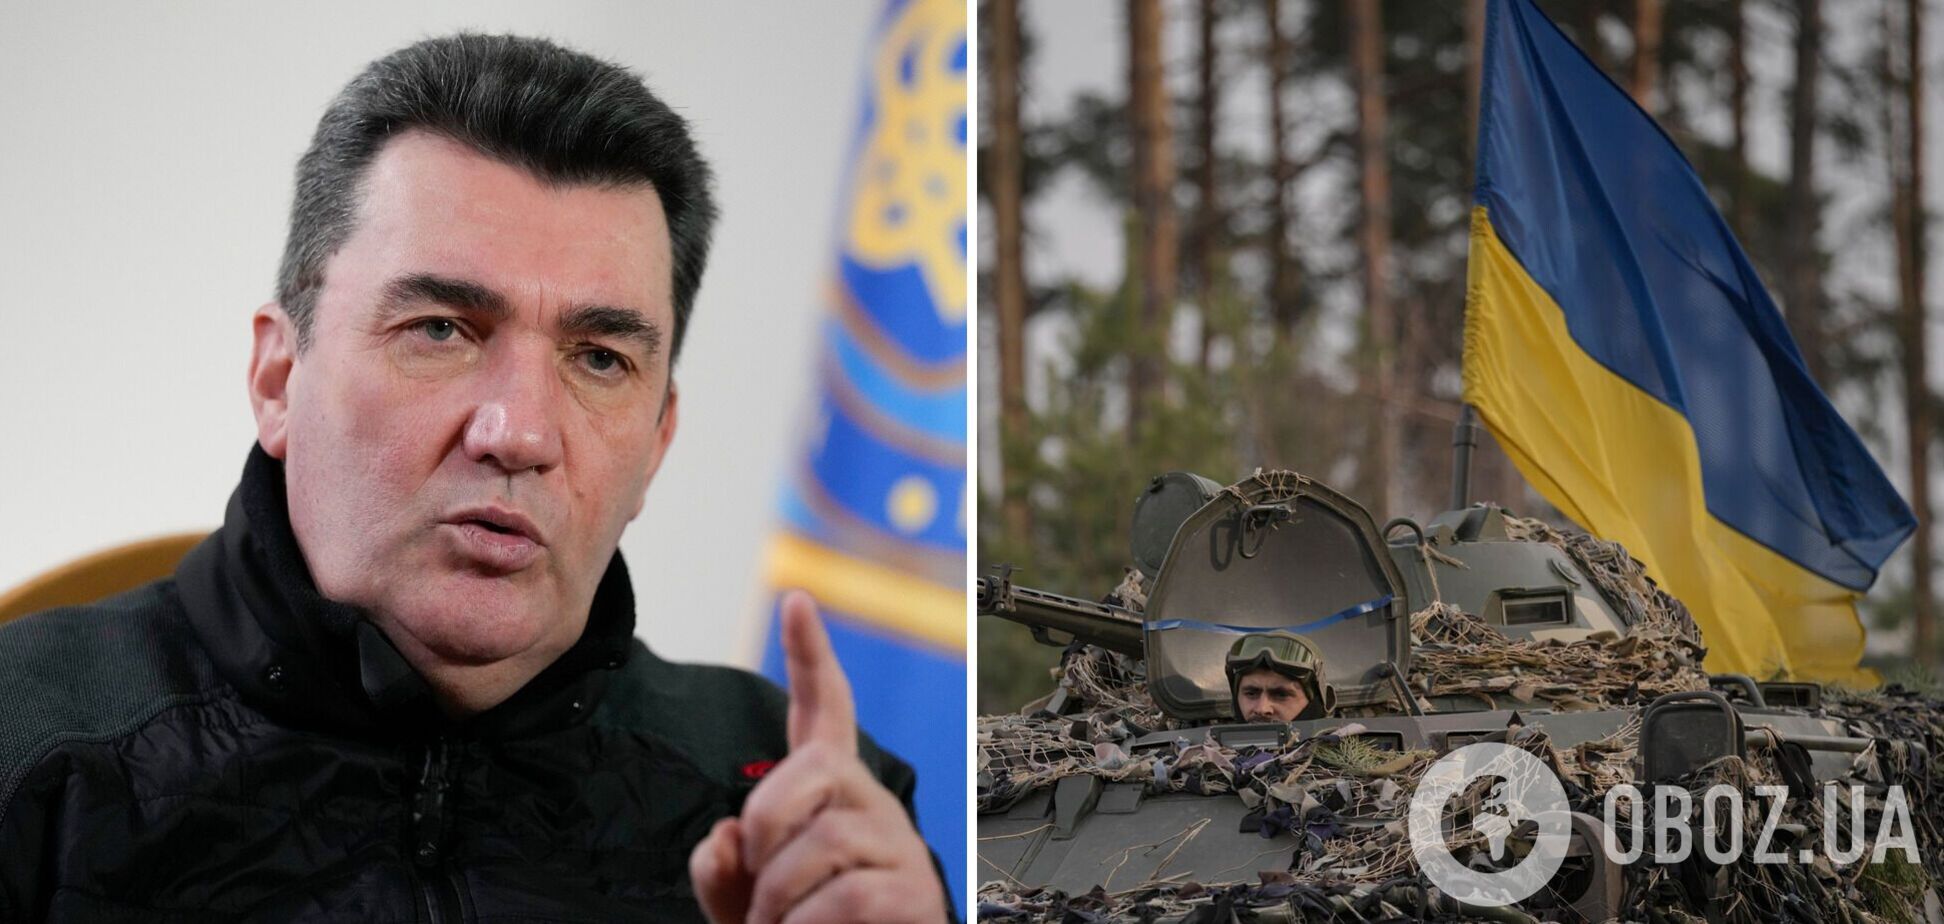 Данілов: Україна – не Корея, координати руху 'російському військовому кораблю' задано